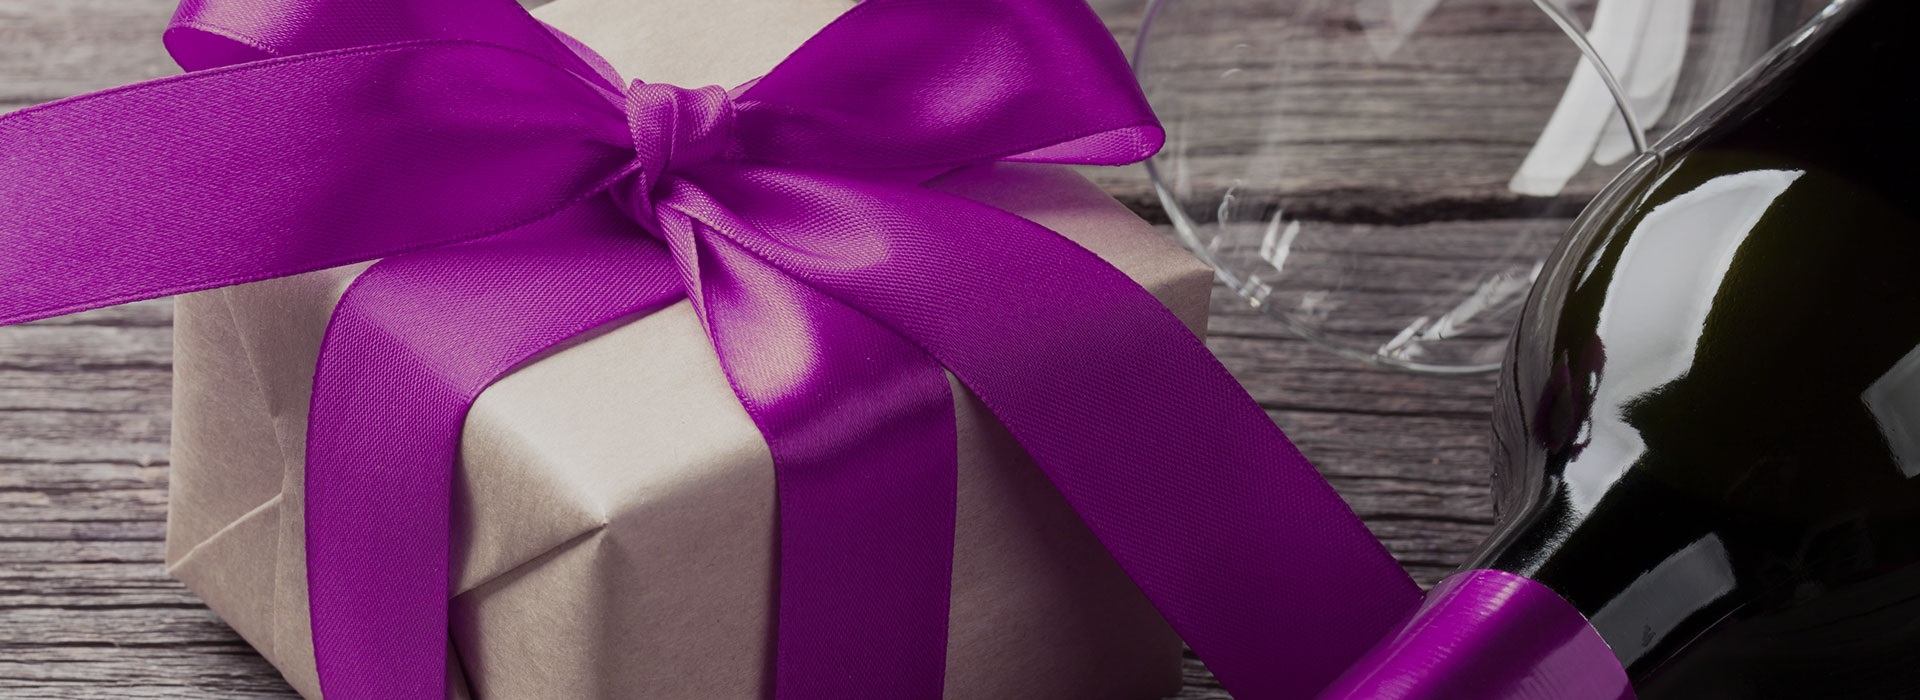 Kraft Paper Rolls - -Flower sleeves wraps & rolls-Wholesale  floral packaging & supplies